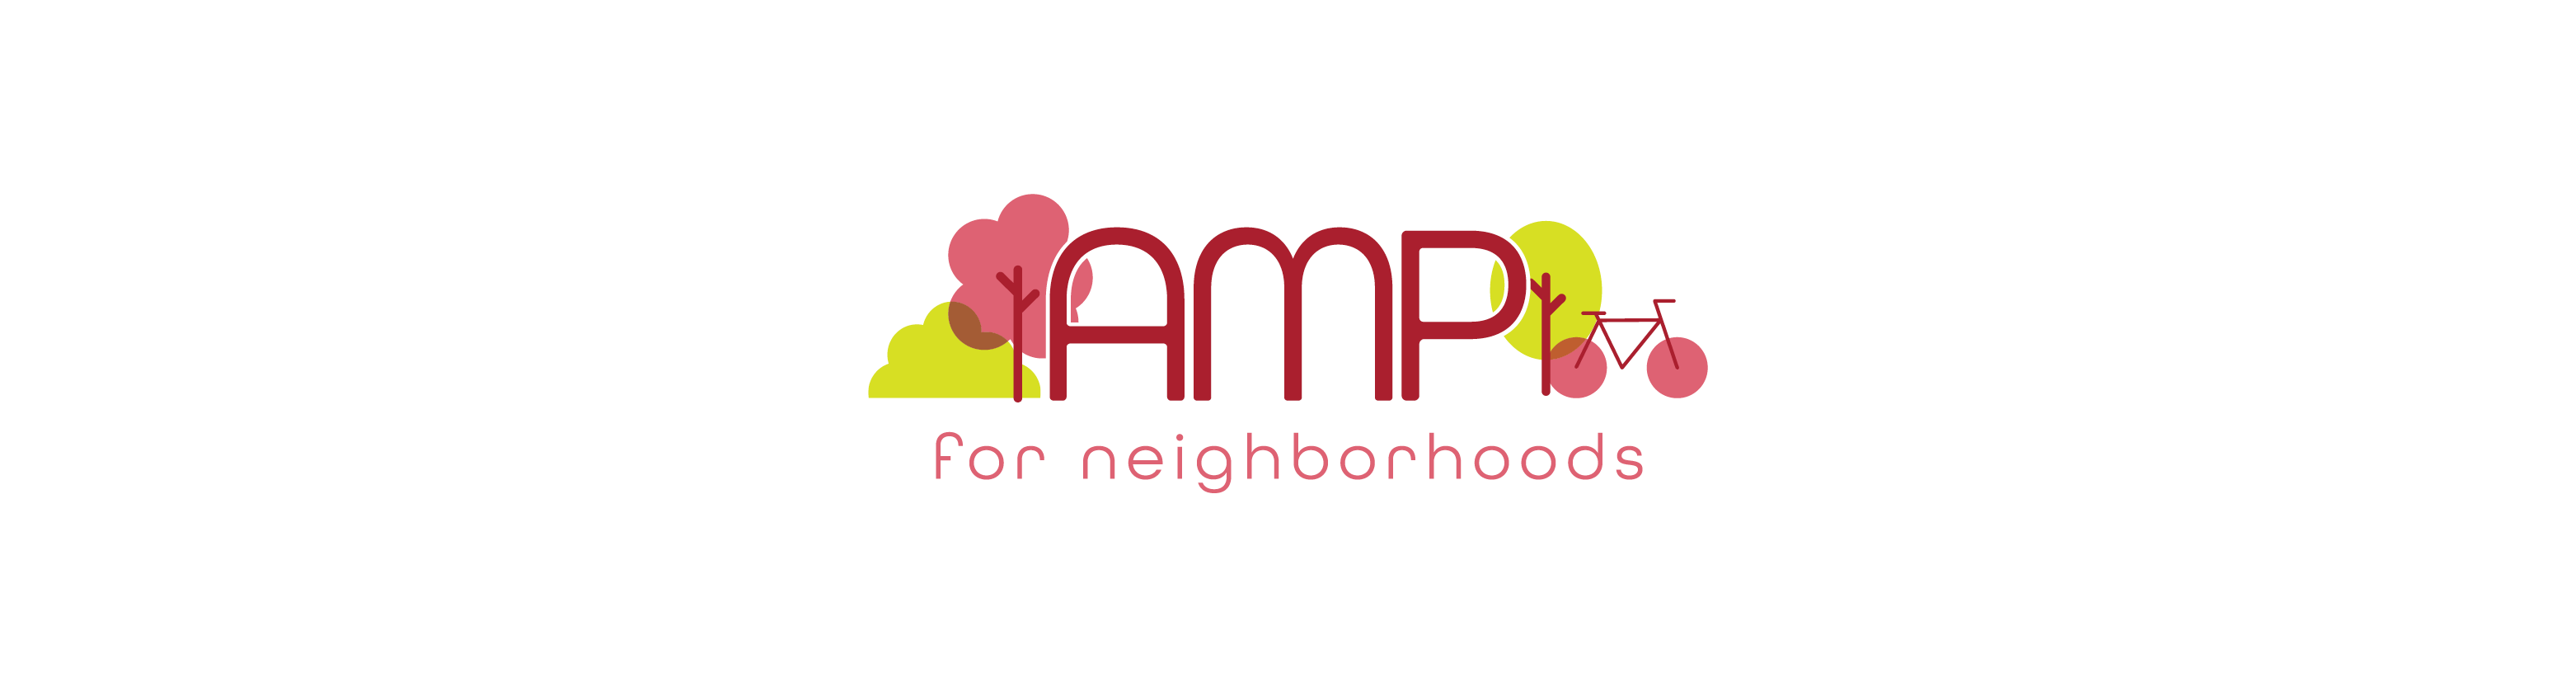 amp for neighborhoods logo